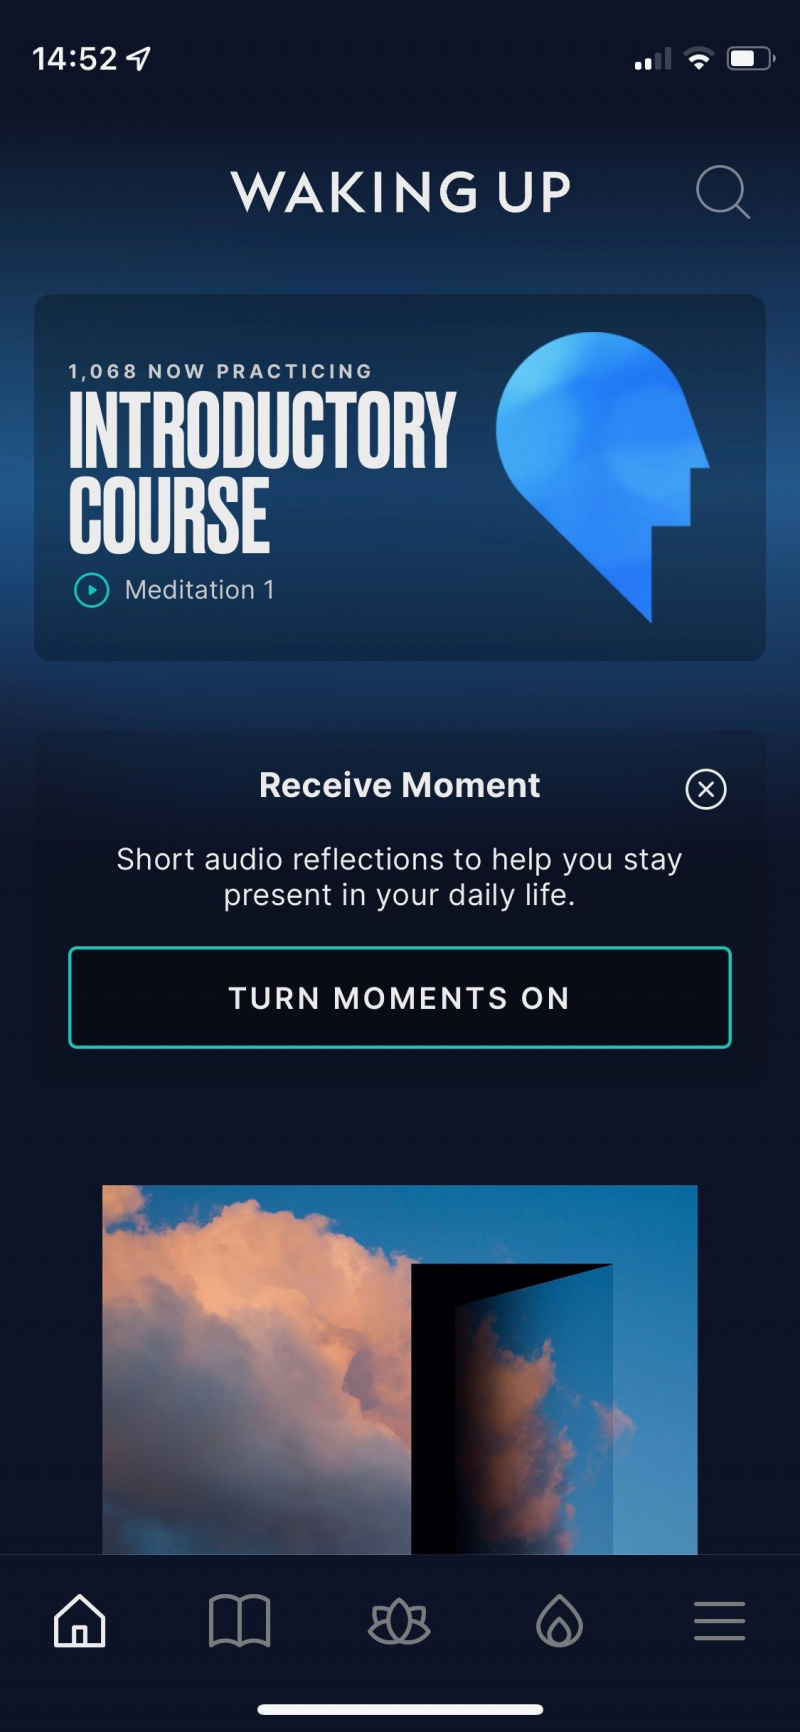   Captura de pantalla de la aplicación Waking Up que muestra la opción de curso introductorio